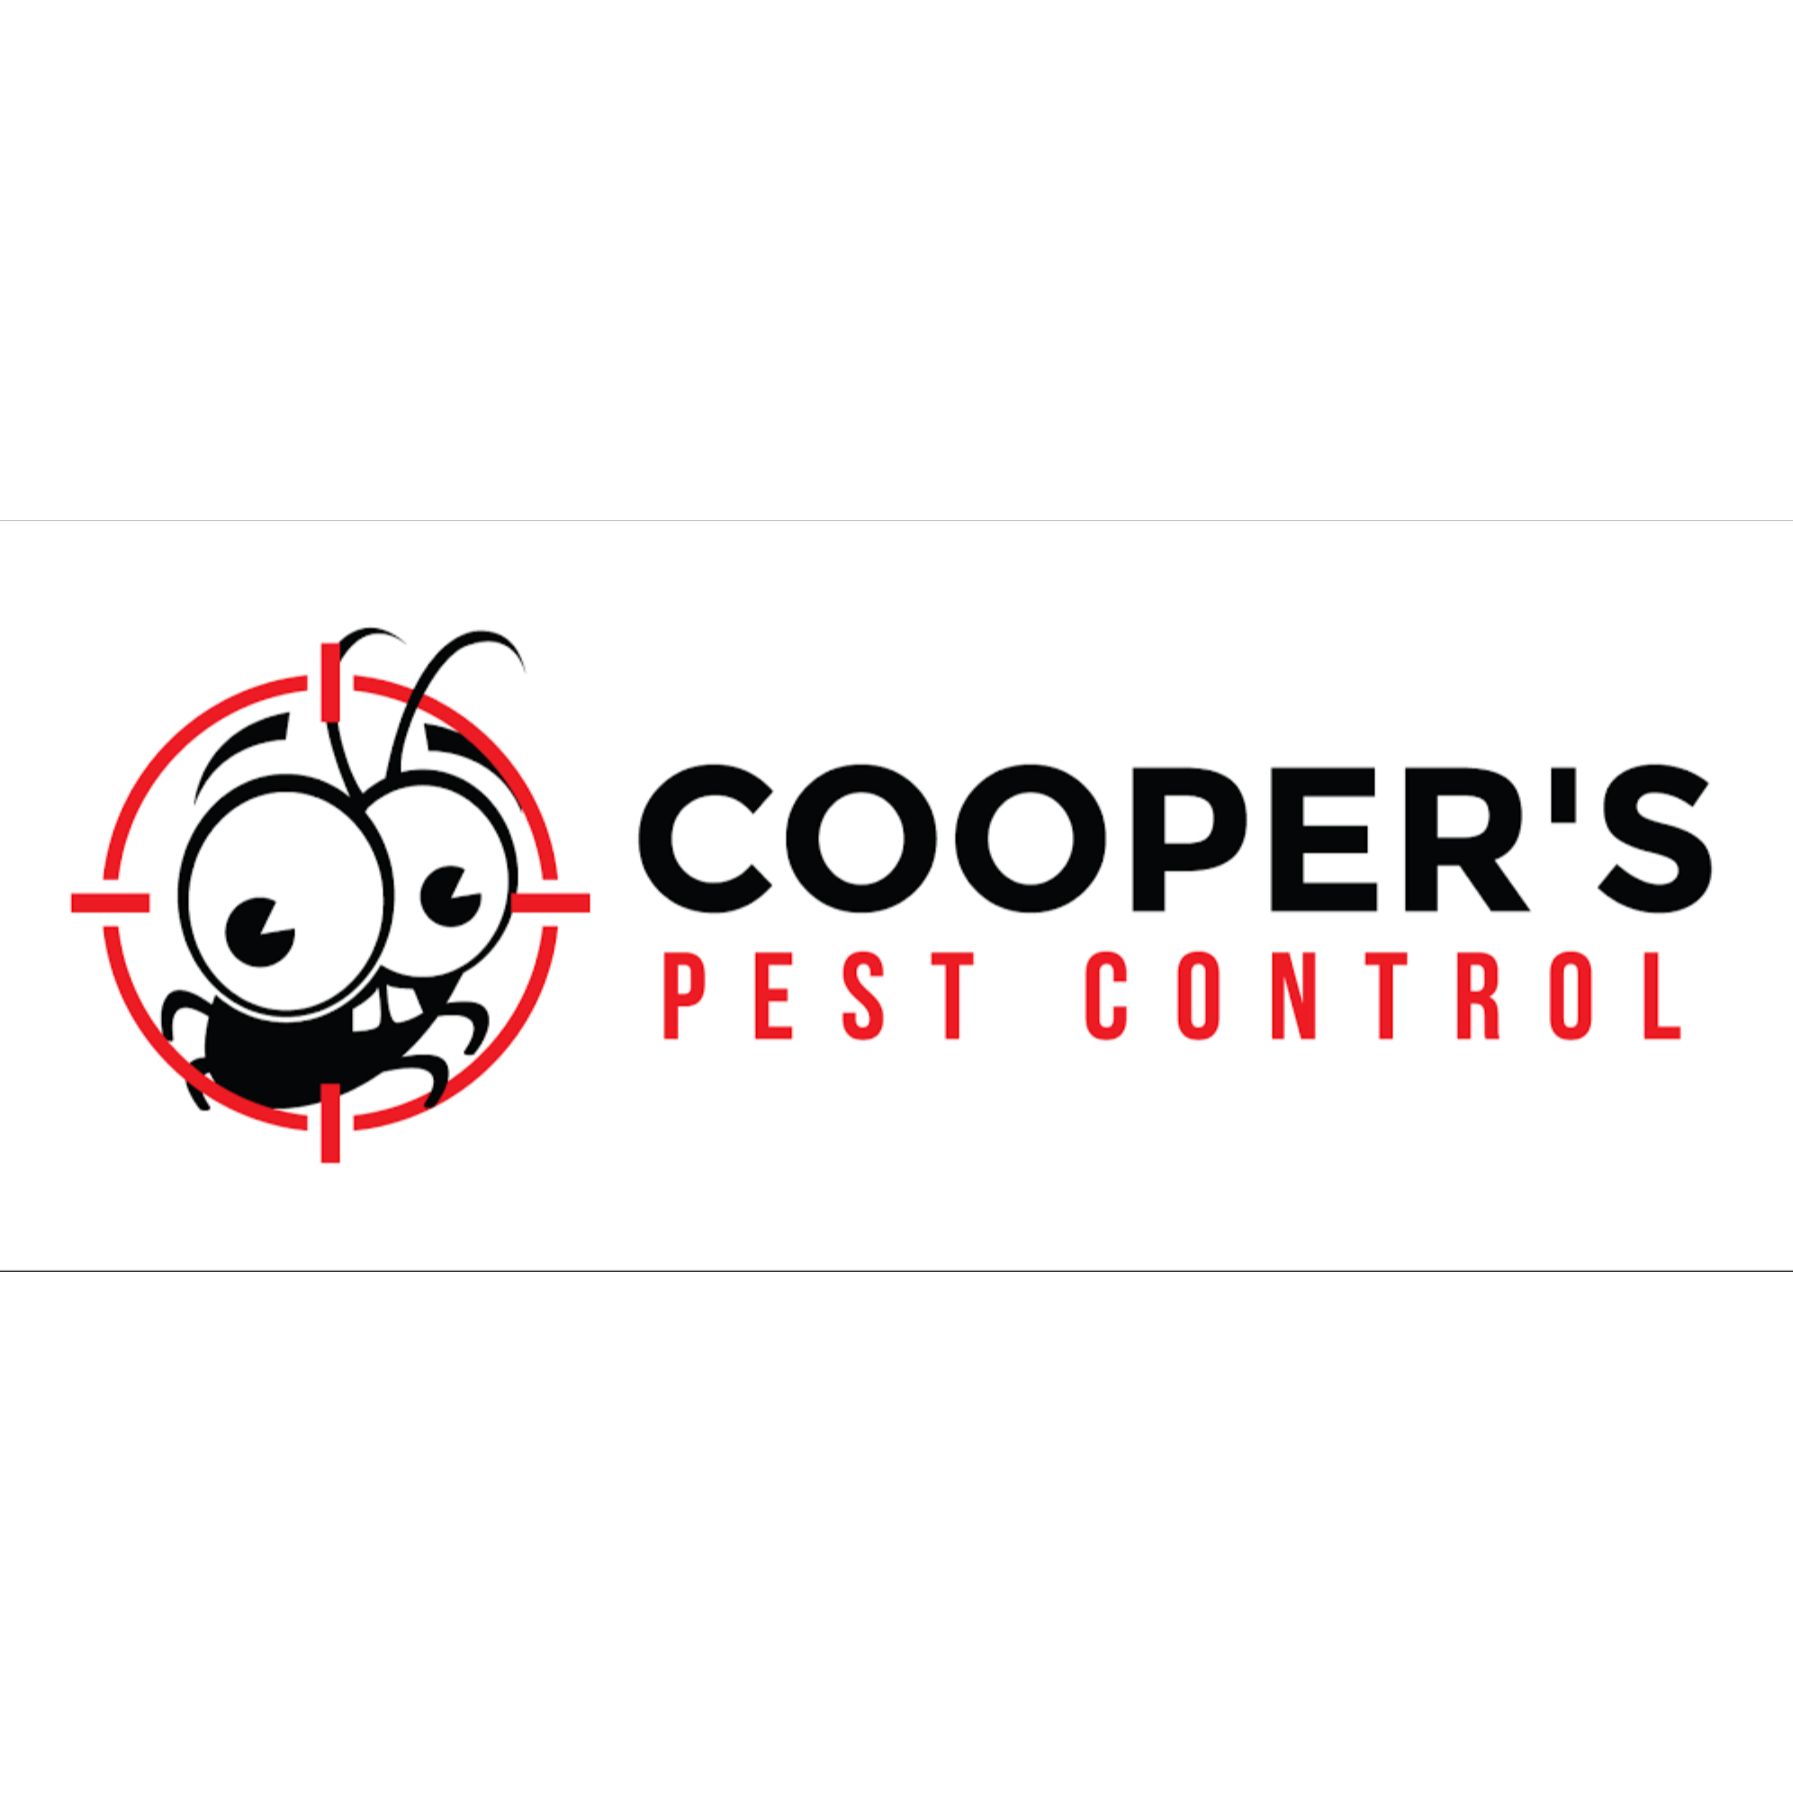 Cooper's Pest Control - Tregear, NSW - 0430 360 176 | ShowMeLocal.com